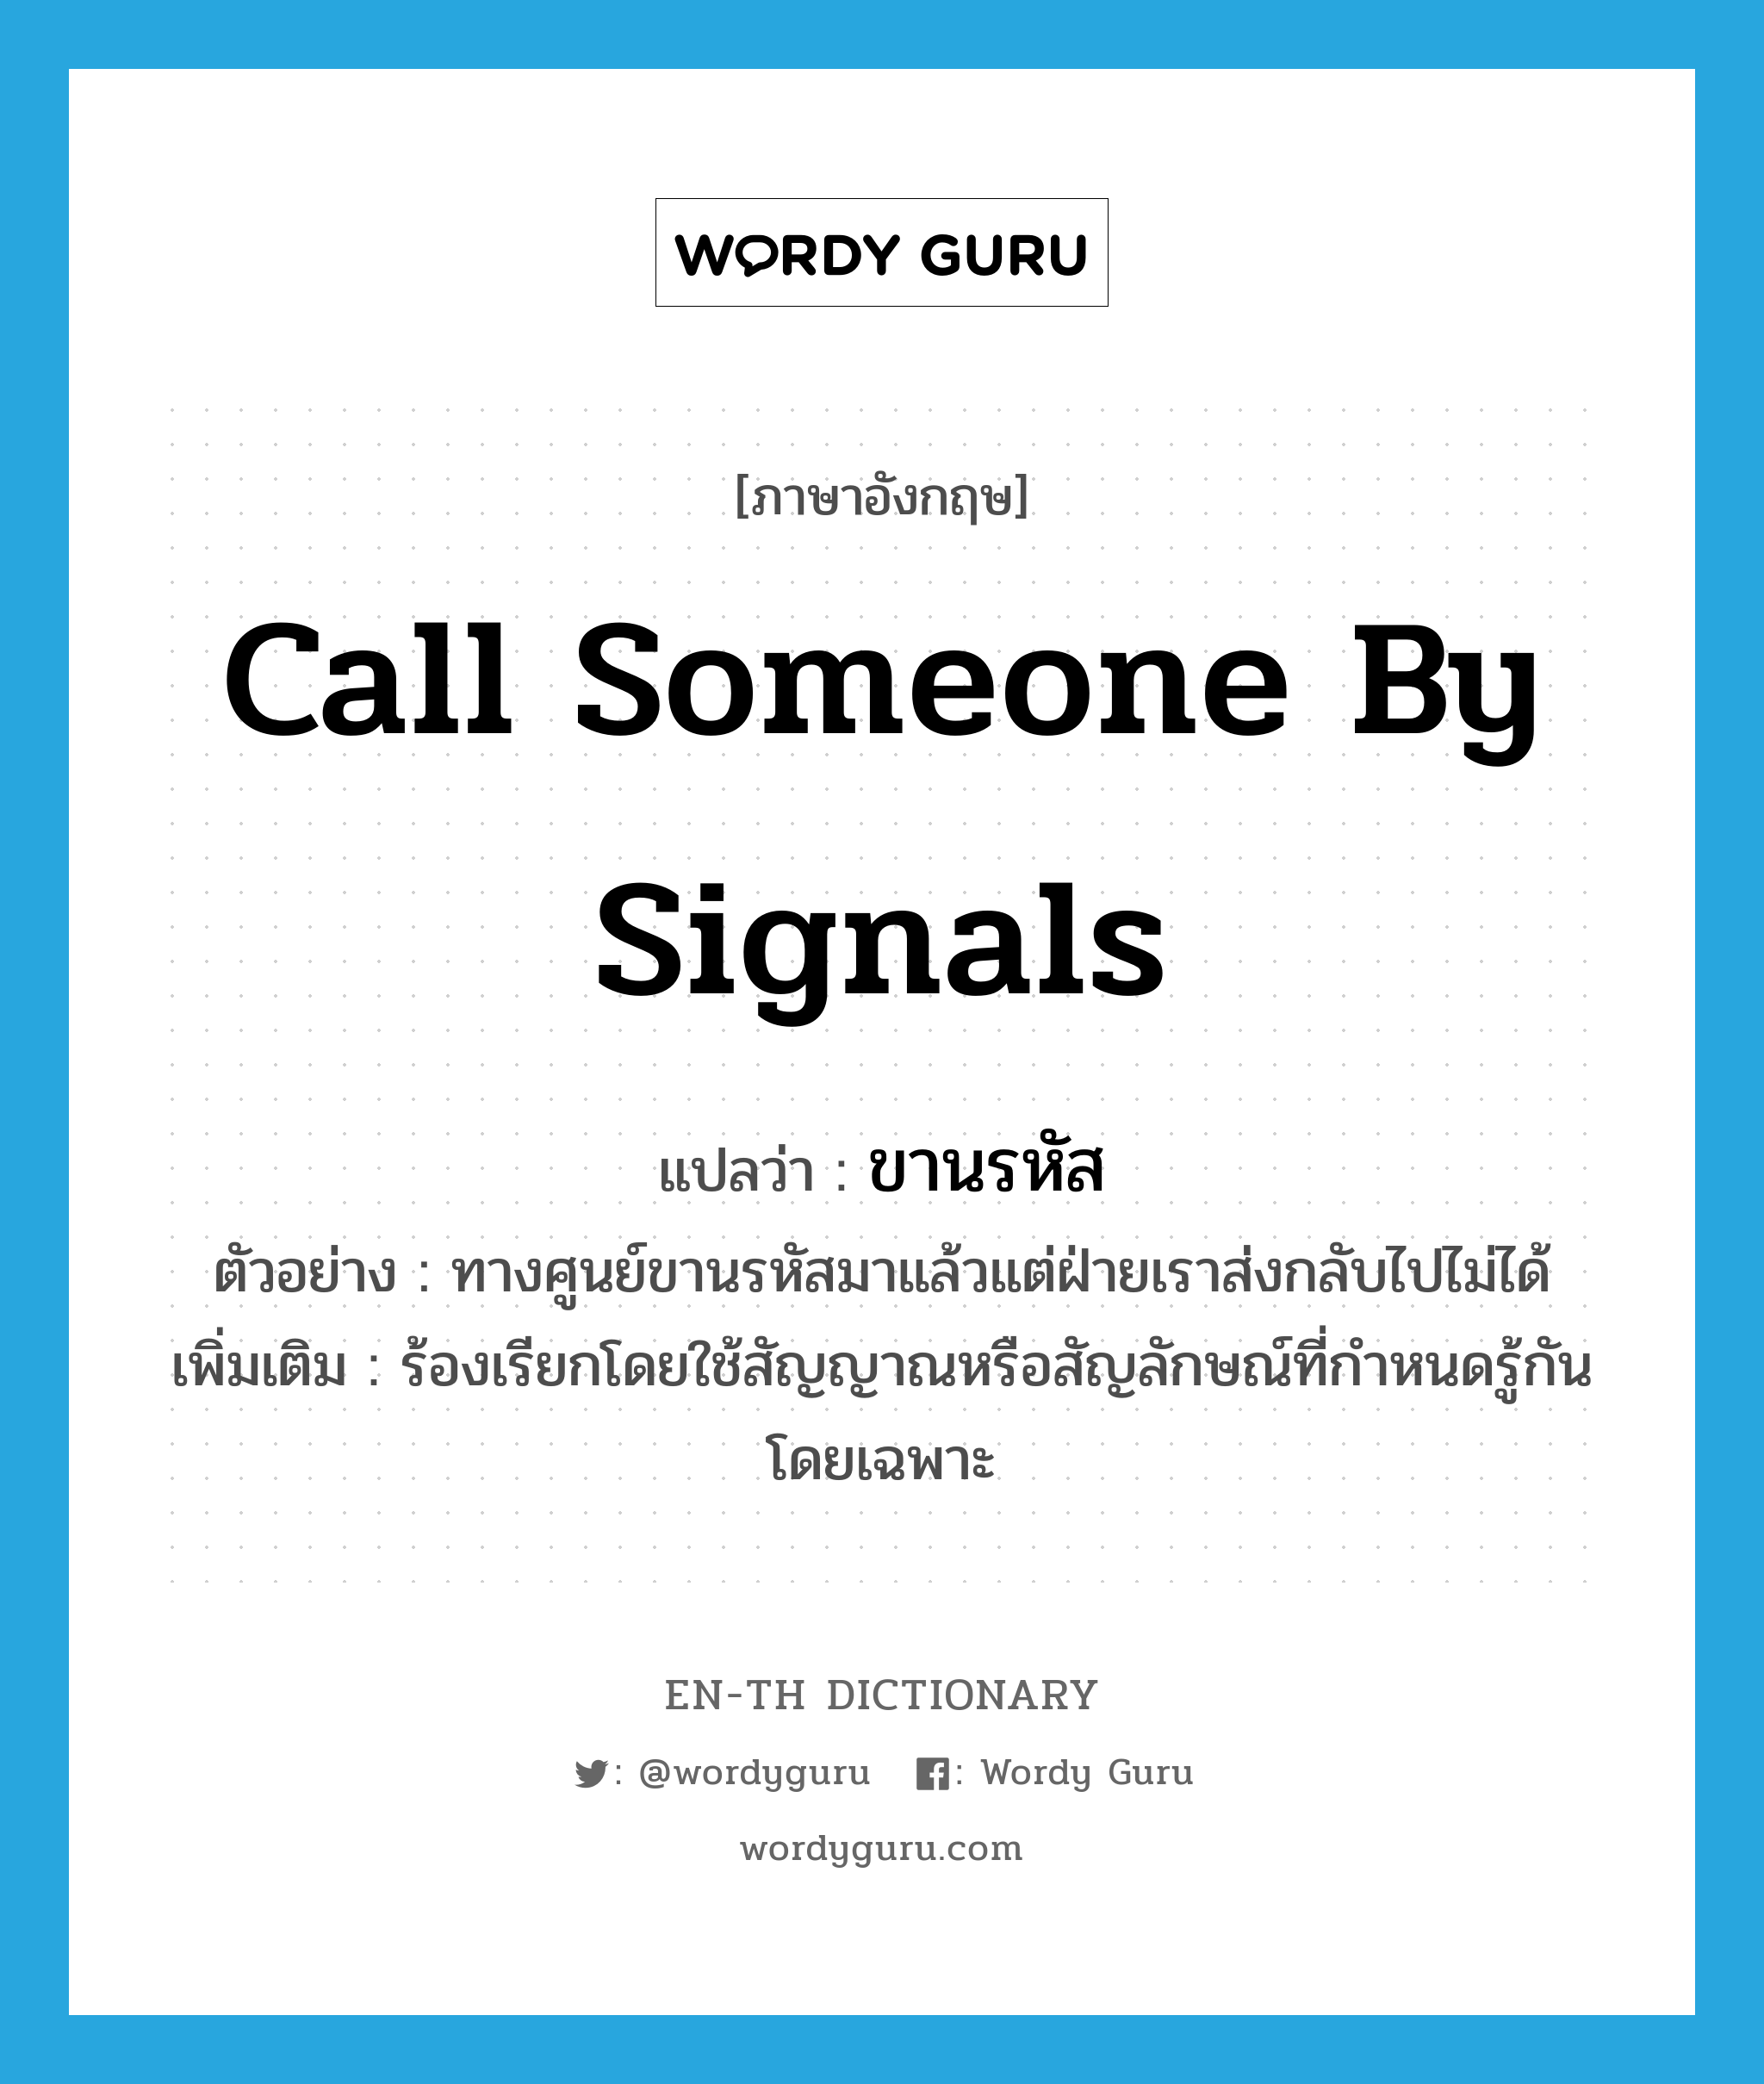 call someone by signals แปลว่า?, คำศัพท์ภาษาอังกฤษ call someone by signals แปลว่า ขานรหัส ประเภท V ตัวอย่าง ทางศูนย์ขานรหัสมาแล้วแต่ฝ่ายเราส่งกลับไปไม่ได้ เพิ่มเติม ร้องเรียกโดยใช้สัญญาณหรือสัญลักษณ์ที่กำหนดรู้กันโดยเฉพาะ หมวด V